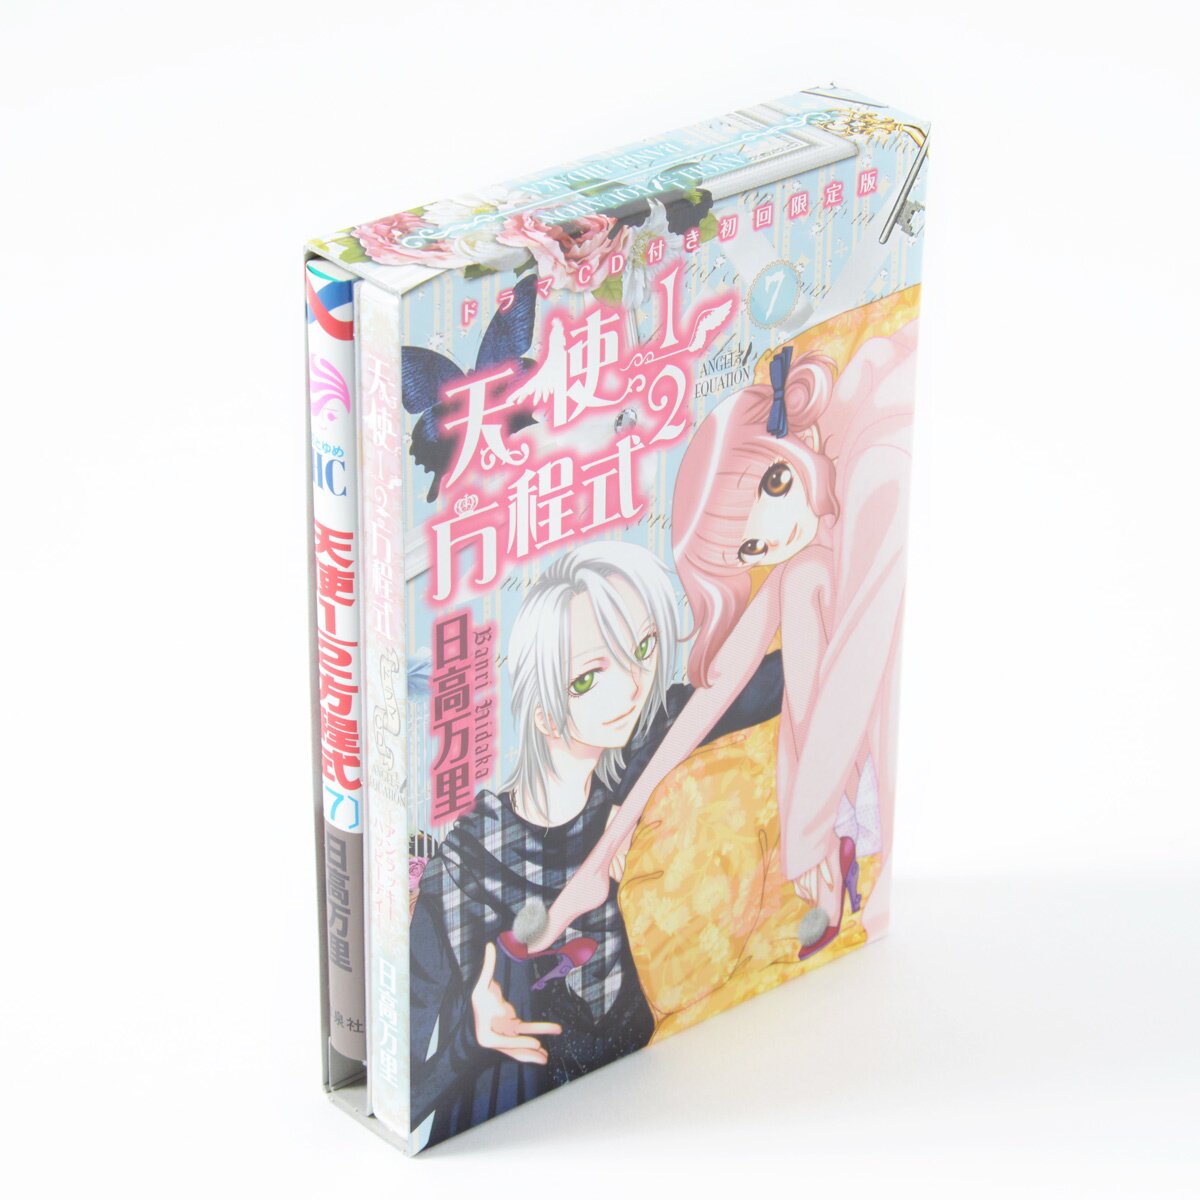 HUNTER X HUNTER Anthology 2 Books Comic Set Hunter + Kareshi / Kiss Anime  Japan